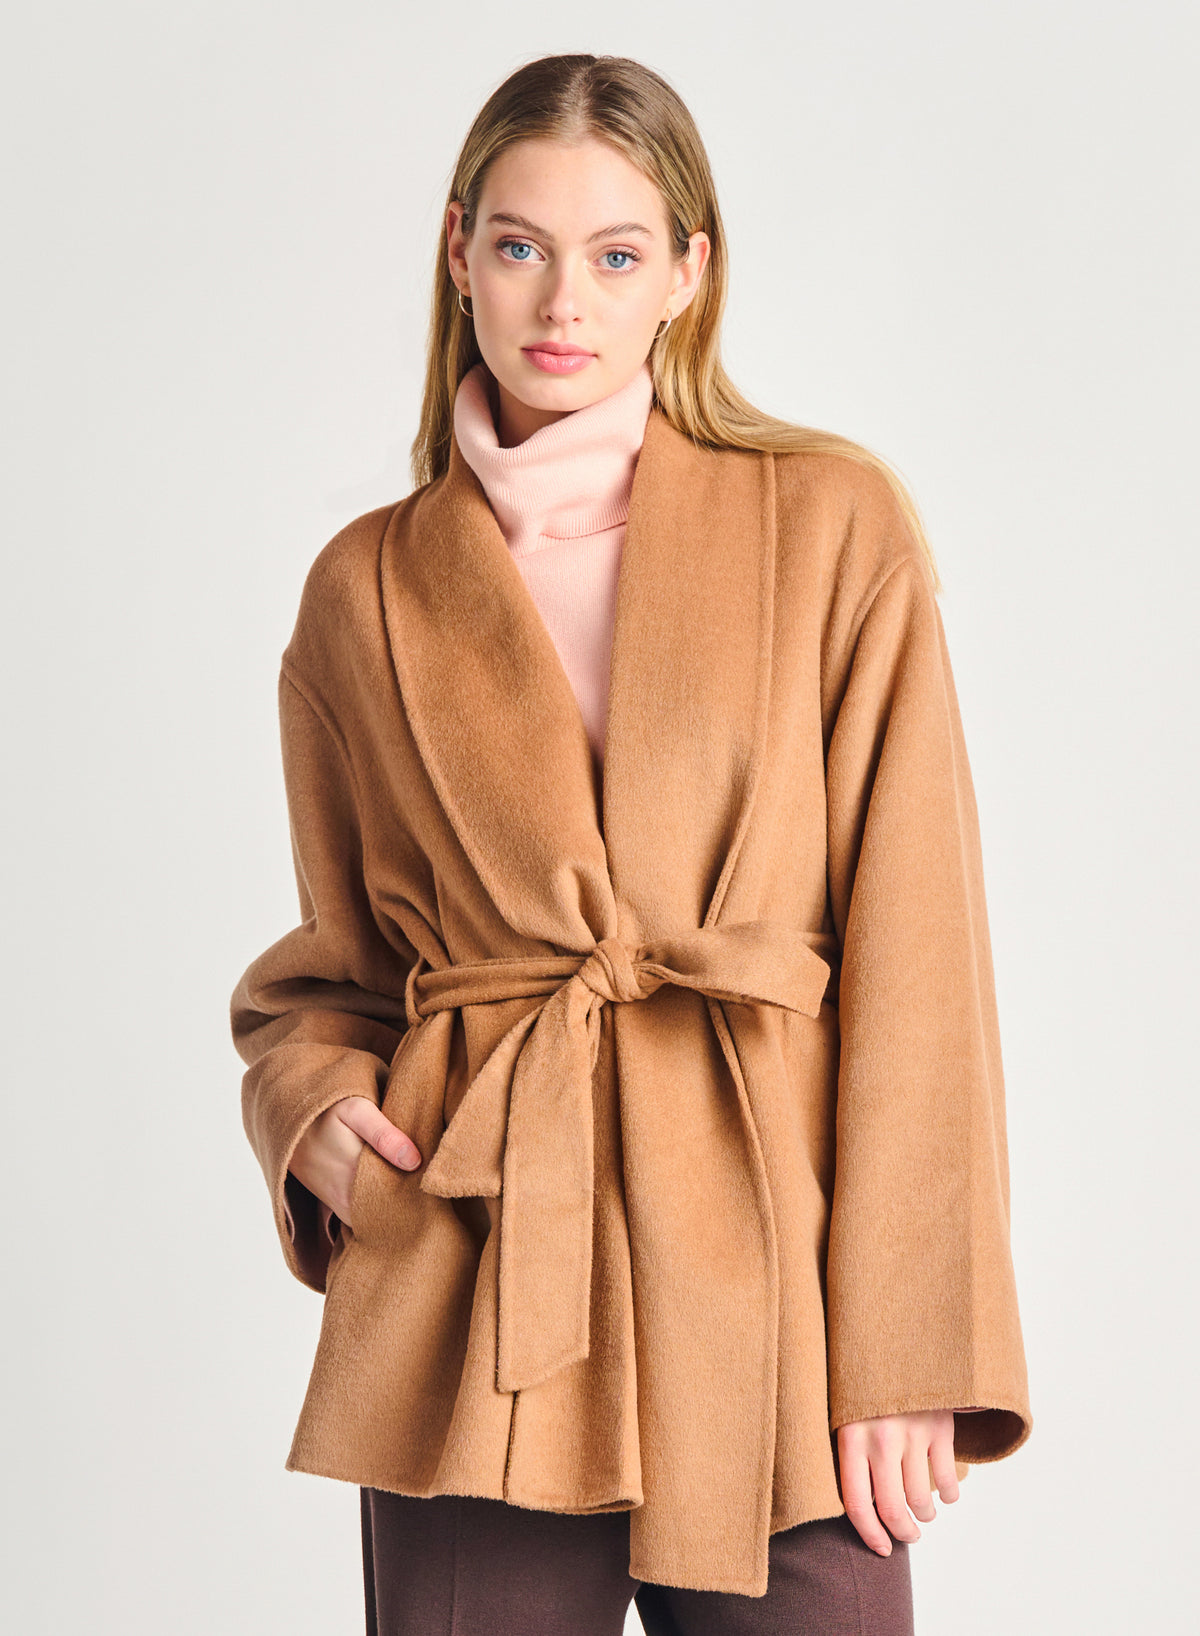 Camel Coat